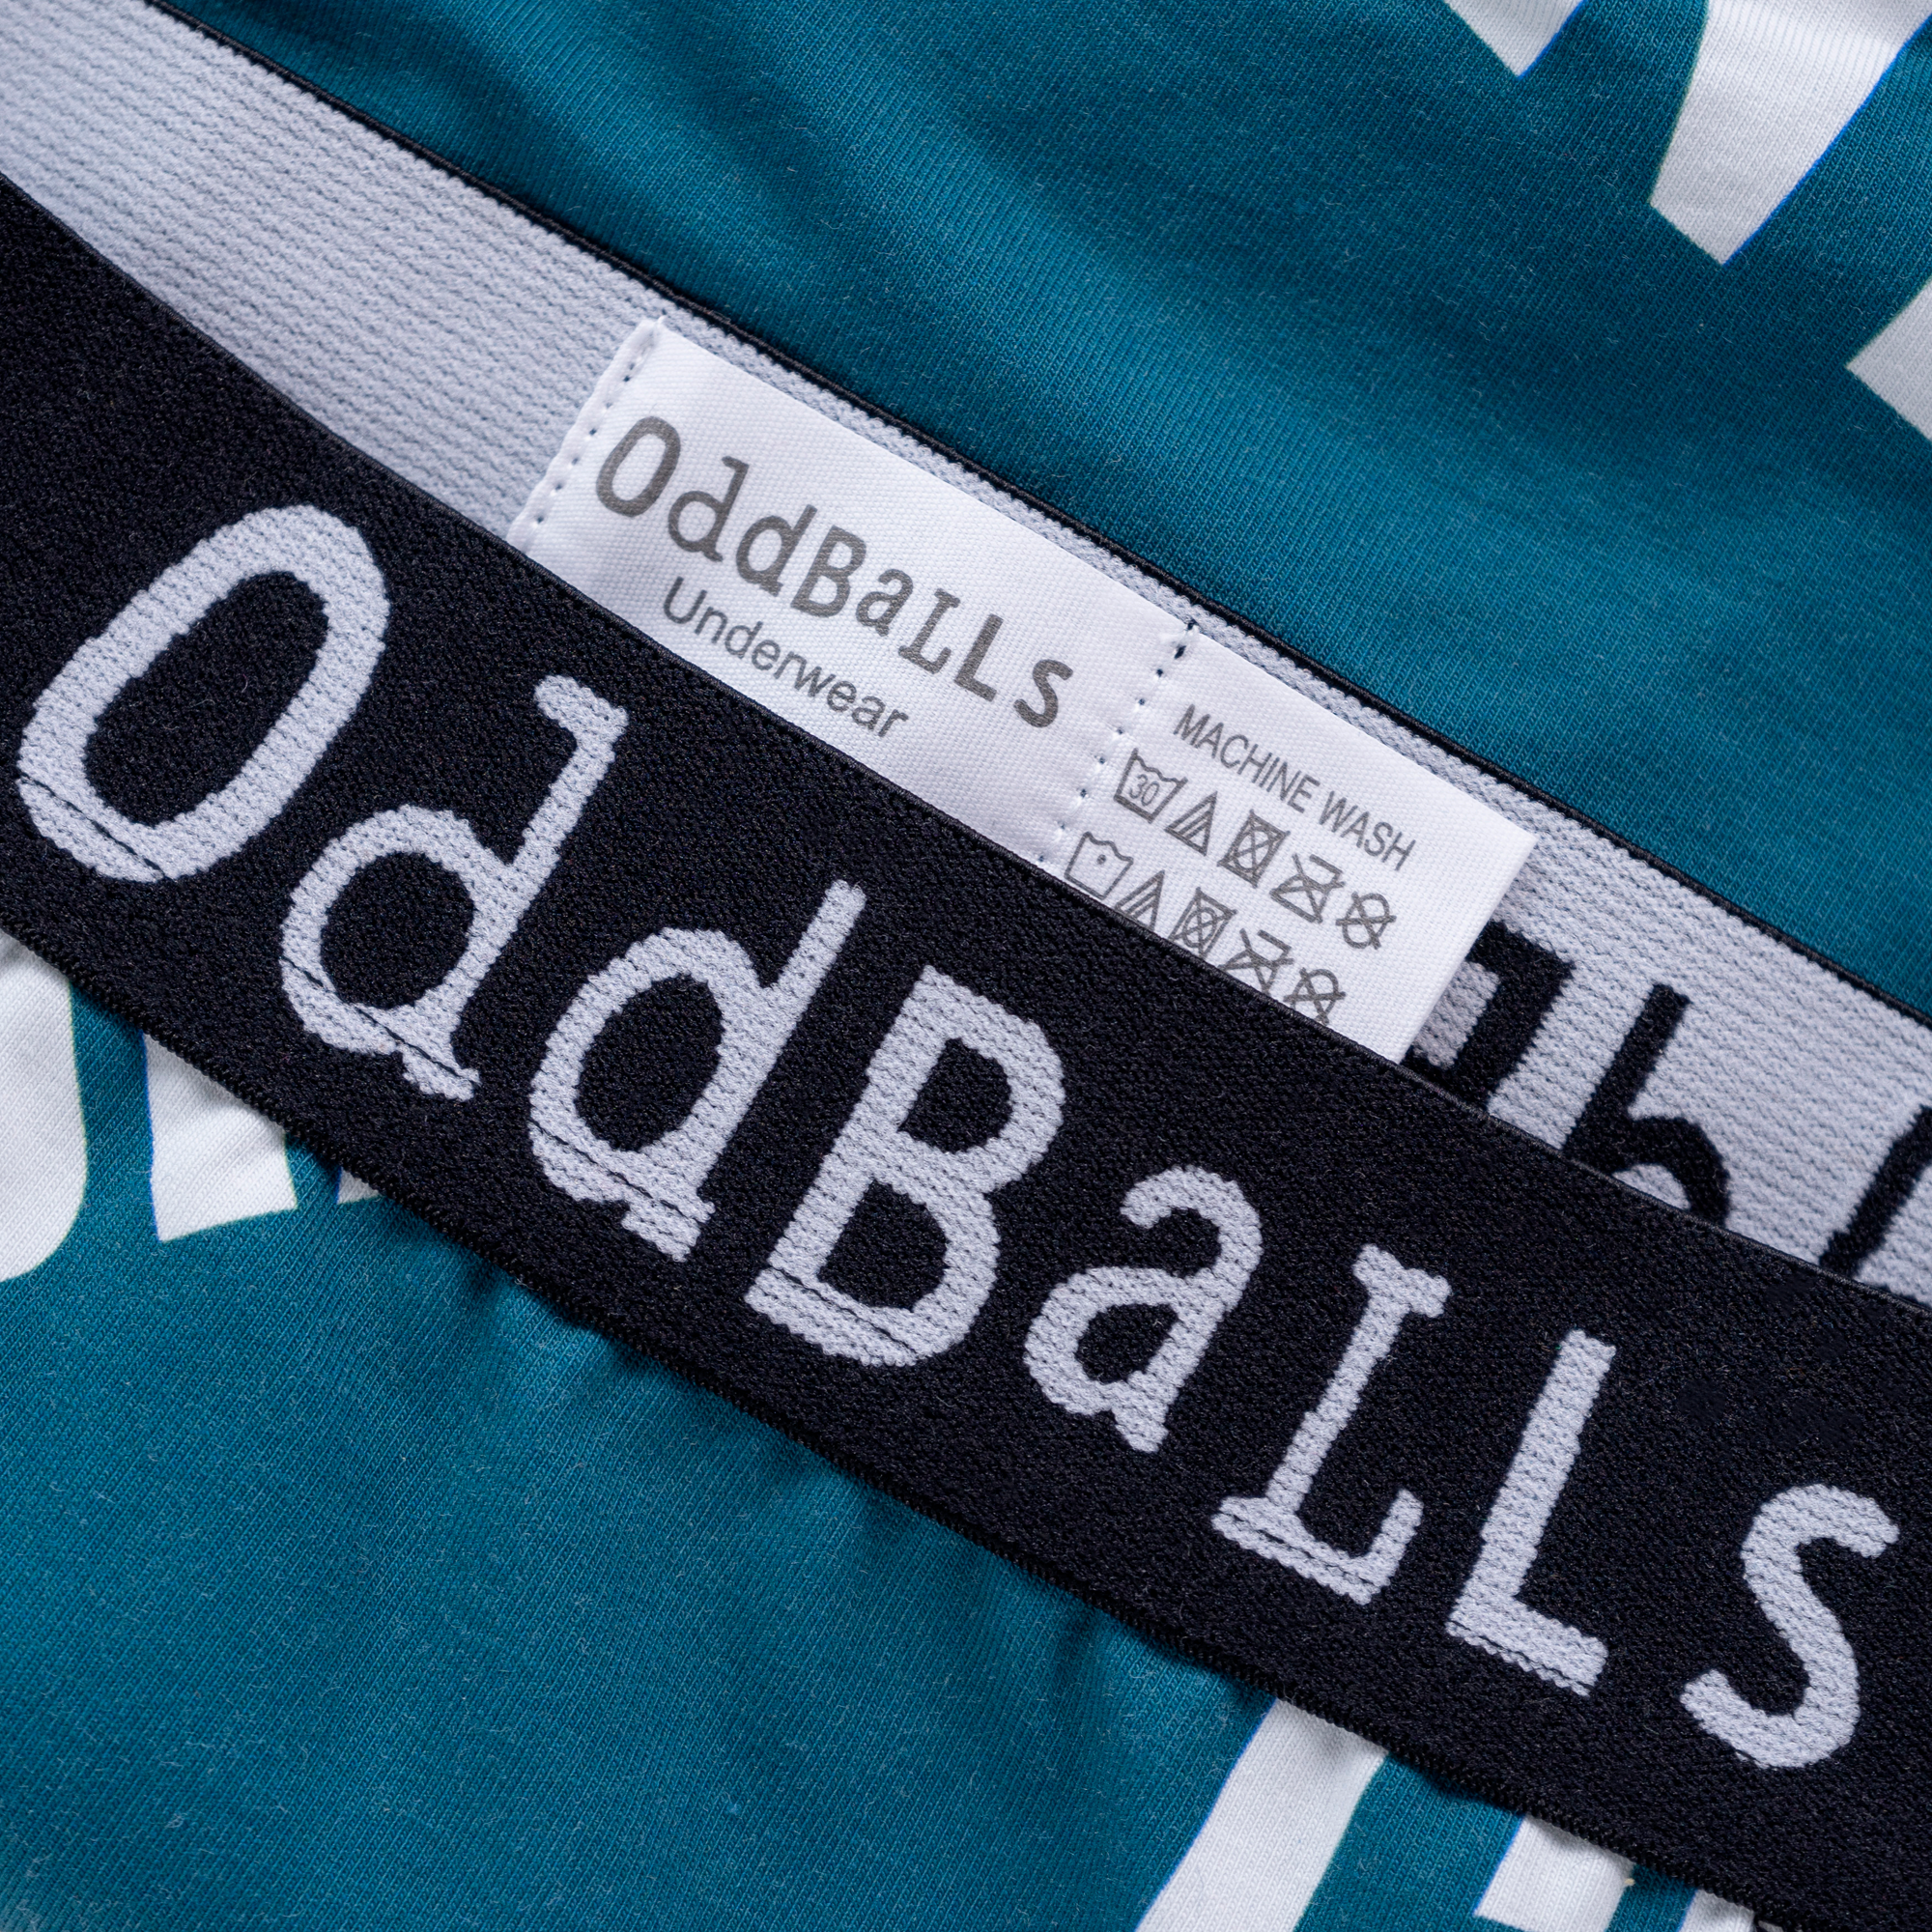 Copy of OddBalls Mens Boxer Shorts